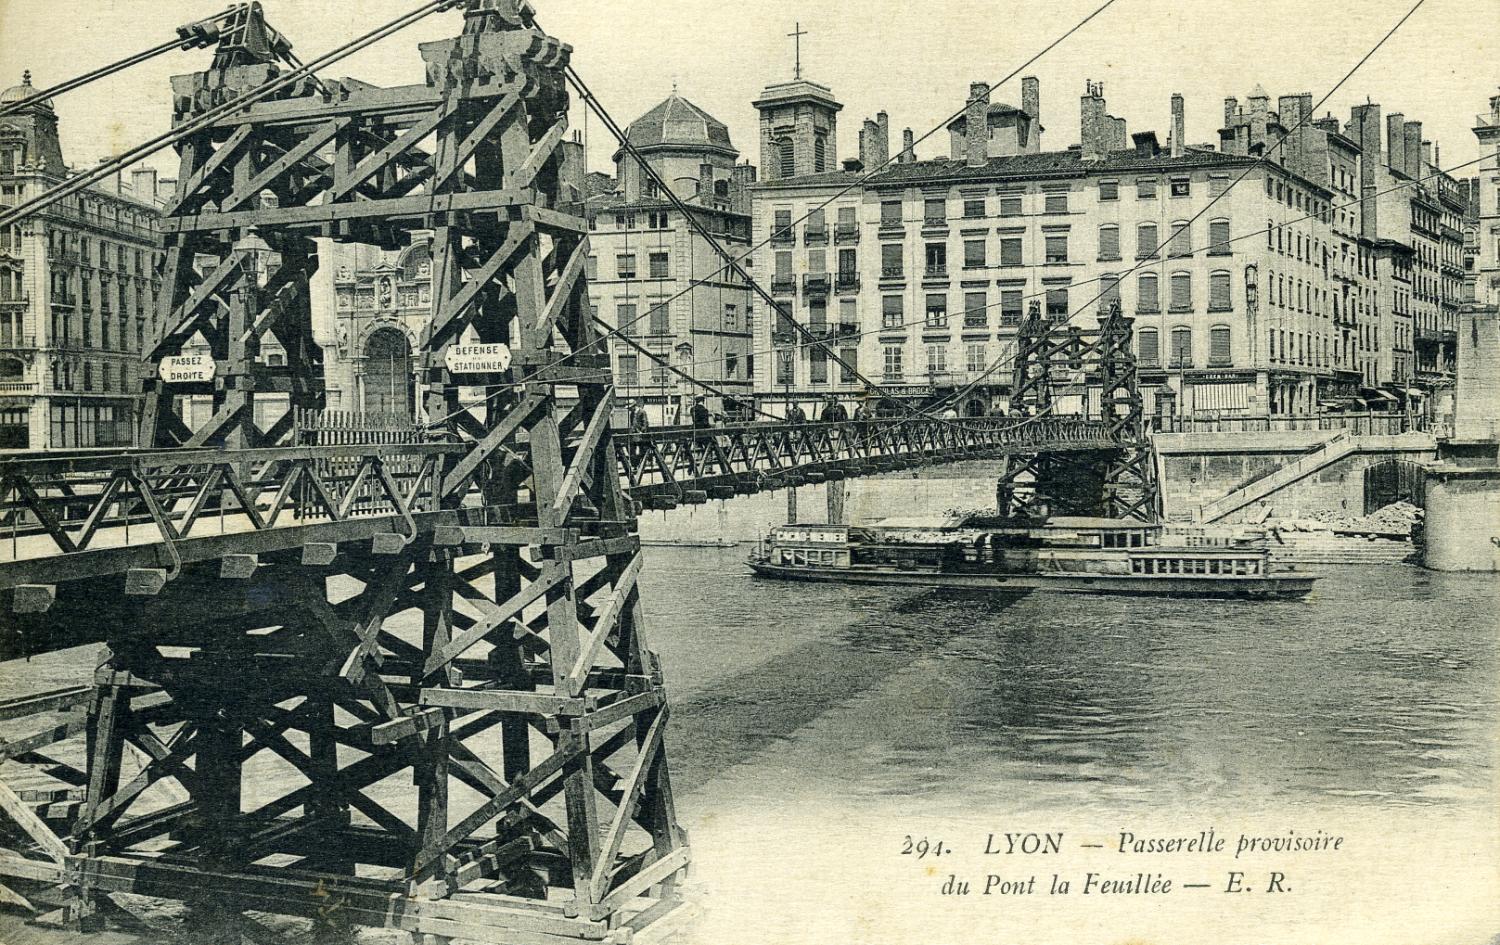 Lyon. - Passerelle provisoire du pont de la Feuillée